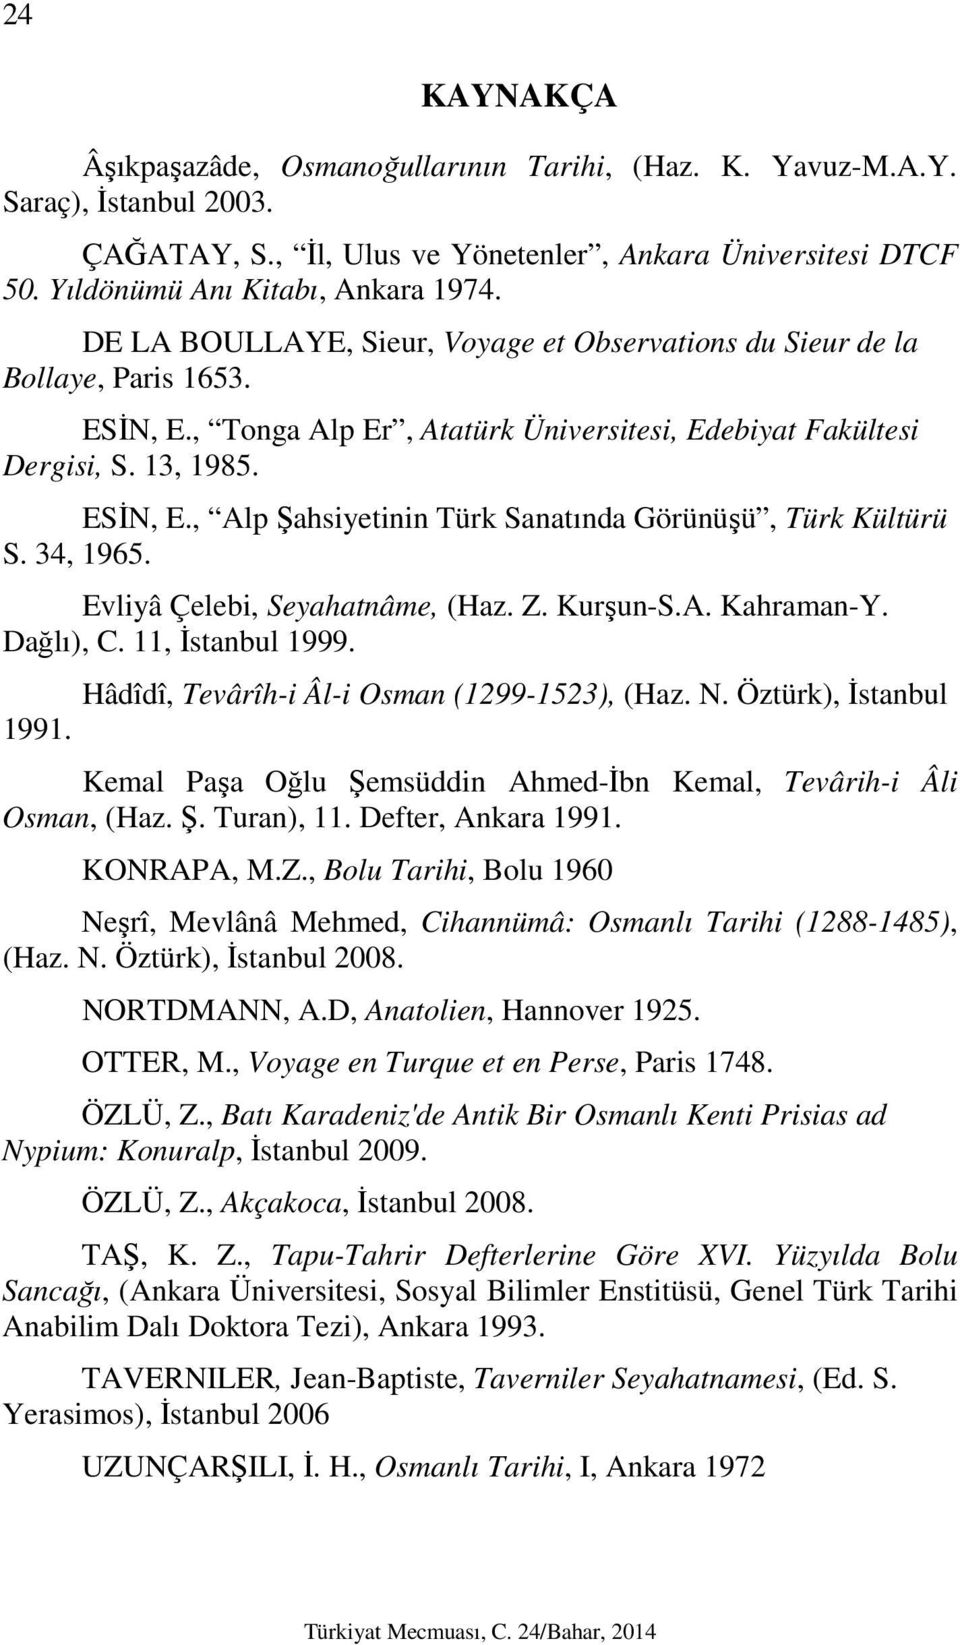 34, 1965. Evliyâ Çelebi, Seyahatnâme, (Haz. Z. Kurşun-S.A. Kahraman-Y. Dağlı), C. 11, İstanbul 1999. Hâdîdî, Tevârîh-i Âl-i Osman (1299-1523), (Haz. N. Öztürk), İstanbul 1991.